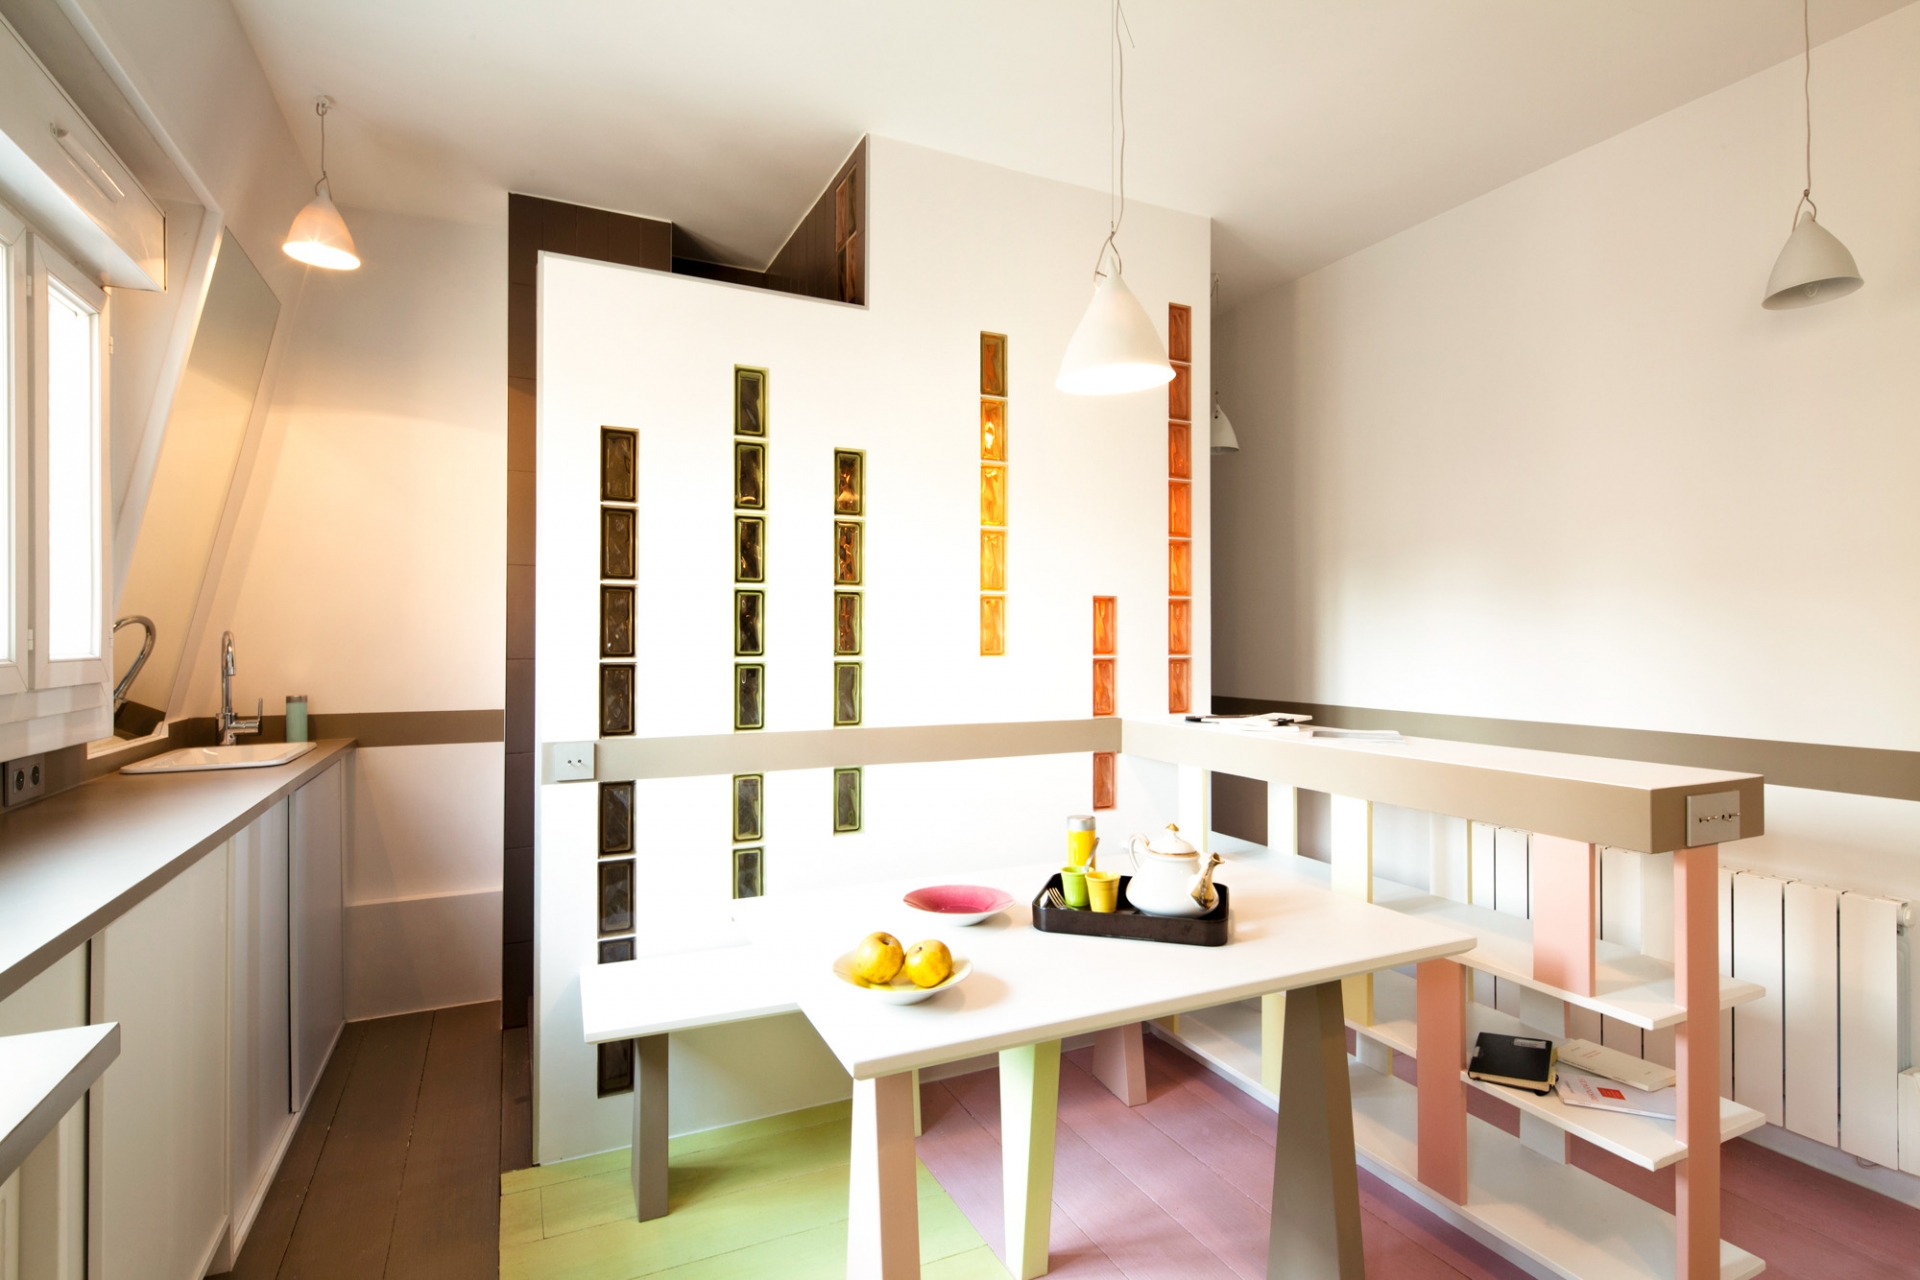 Phòng khách và khu vực ăn uống được bố trí “2 trong 1” với nội thất đơn giản bao gồm 1 chiếc bàn gỗ và băng ghế dài bố trí sát tường thay thế cho sofa cồng kềnh.